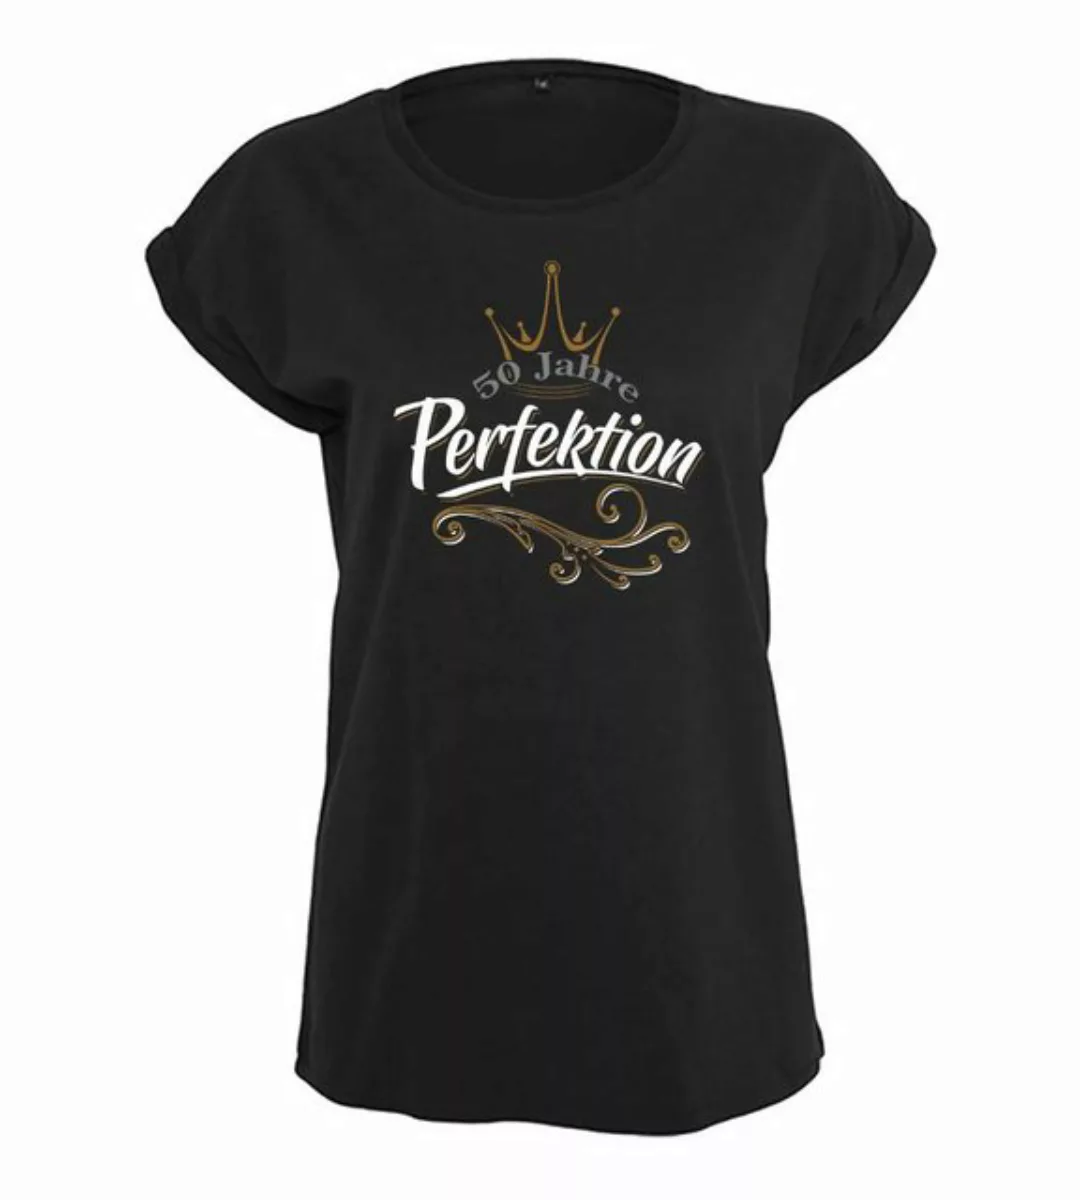 Baddery Print-Shirt Geburtstagsgeschenk für Frauen : 50 Jahre Perfektion - günstig online kaufen